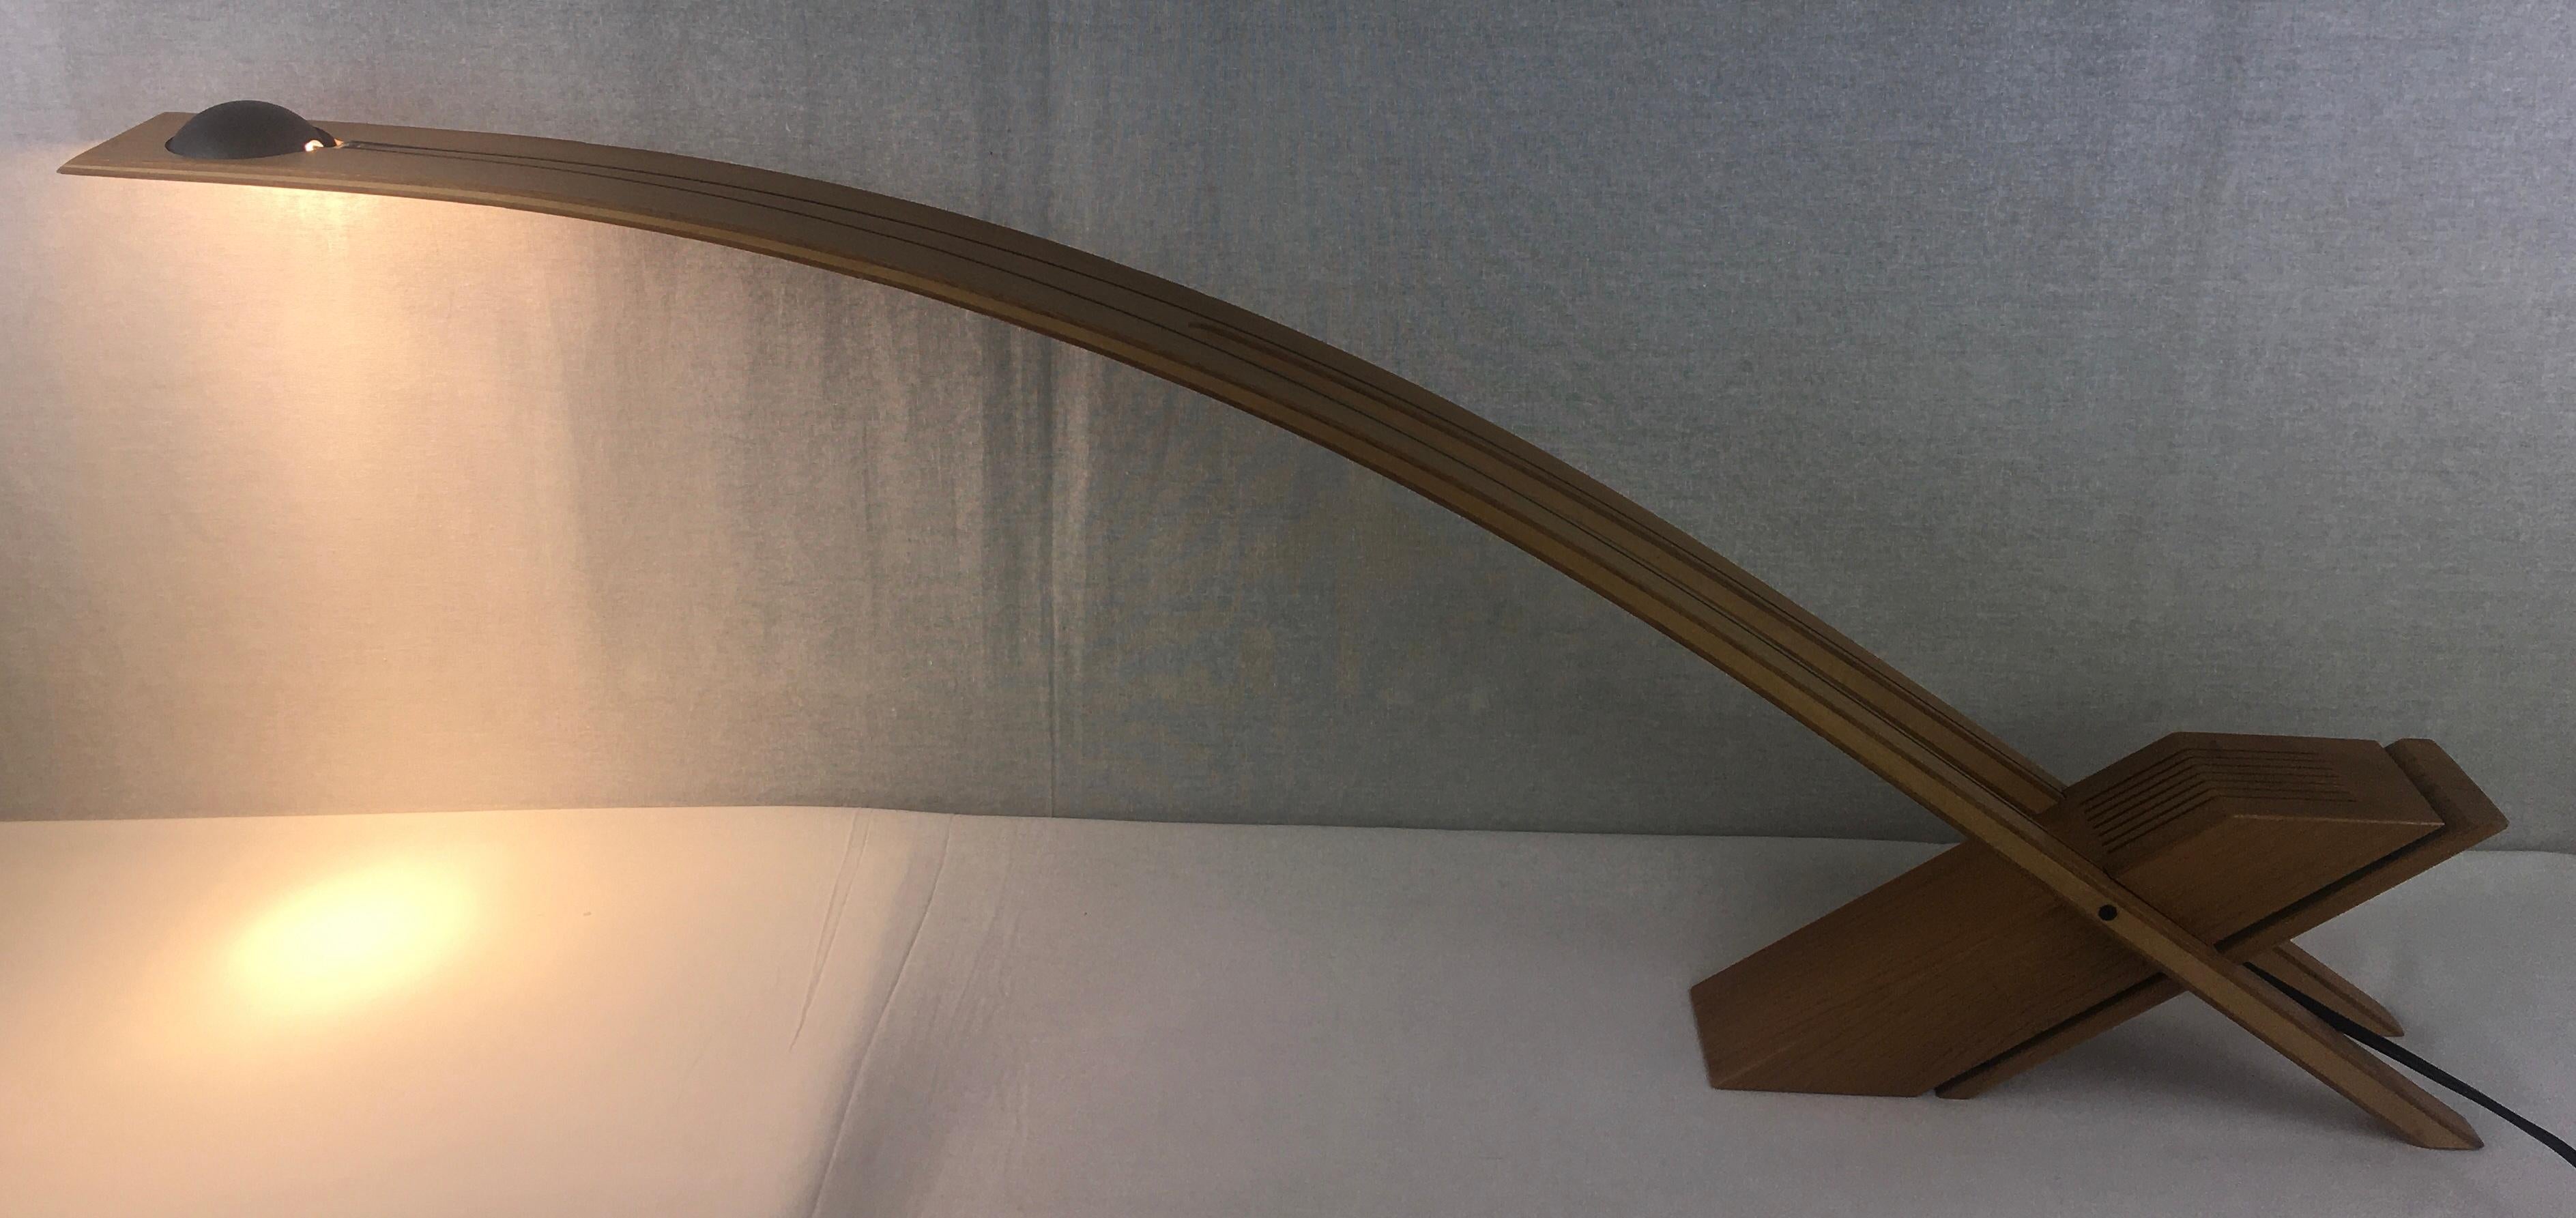 Eine sehr praktische Tisch- oder Schreibtischleuchte in rein organisch-moderner Form mit einem sehr schlanken Design, hergestellt aus massiver Eiche und der Arm ist aus Holzwerkstoff gefertigt. 

Signiert vom Künstler, unbekannt.  Die Herkunft ist